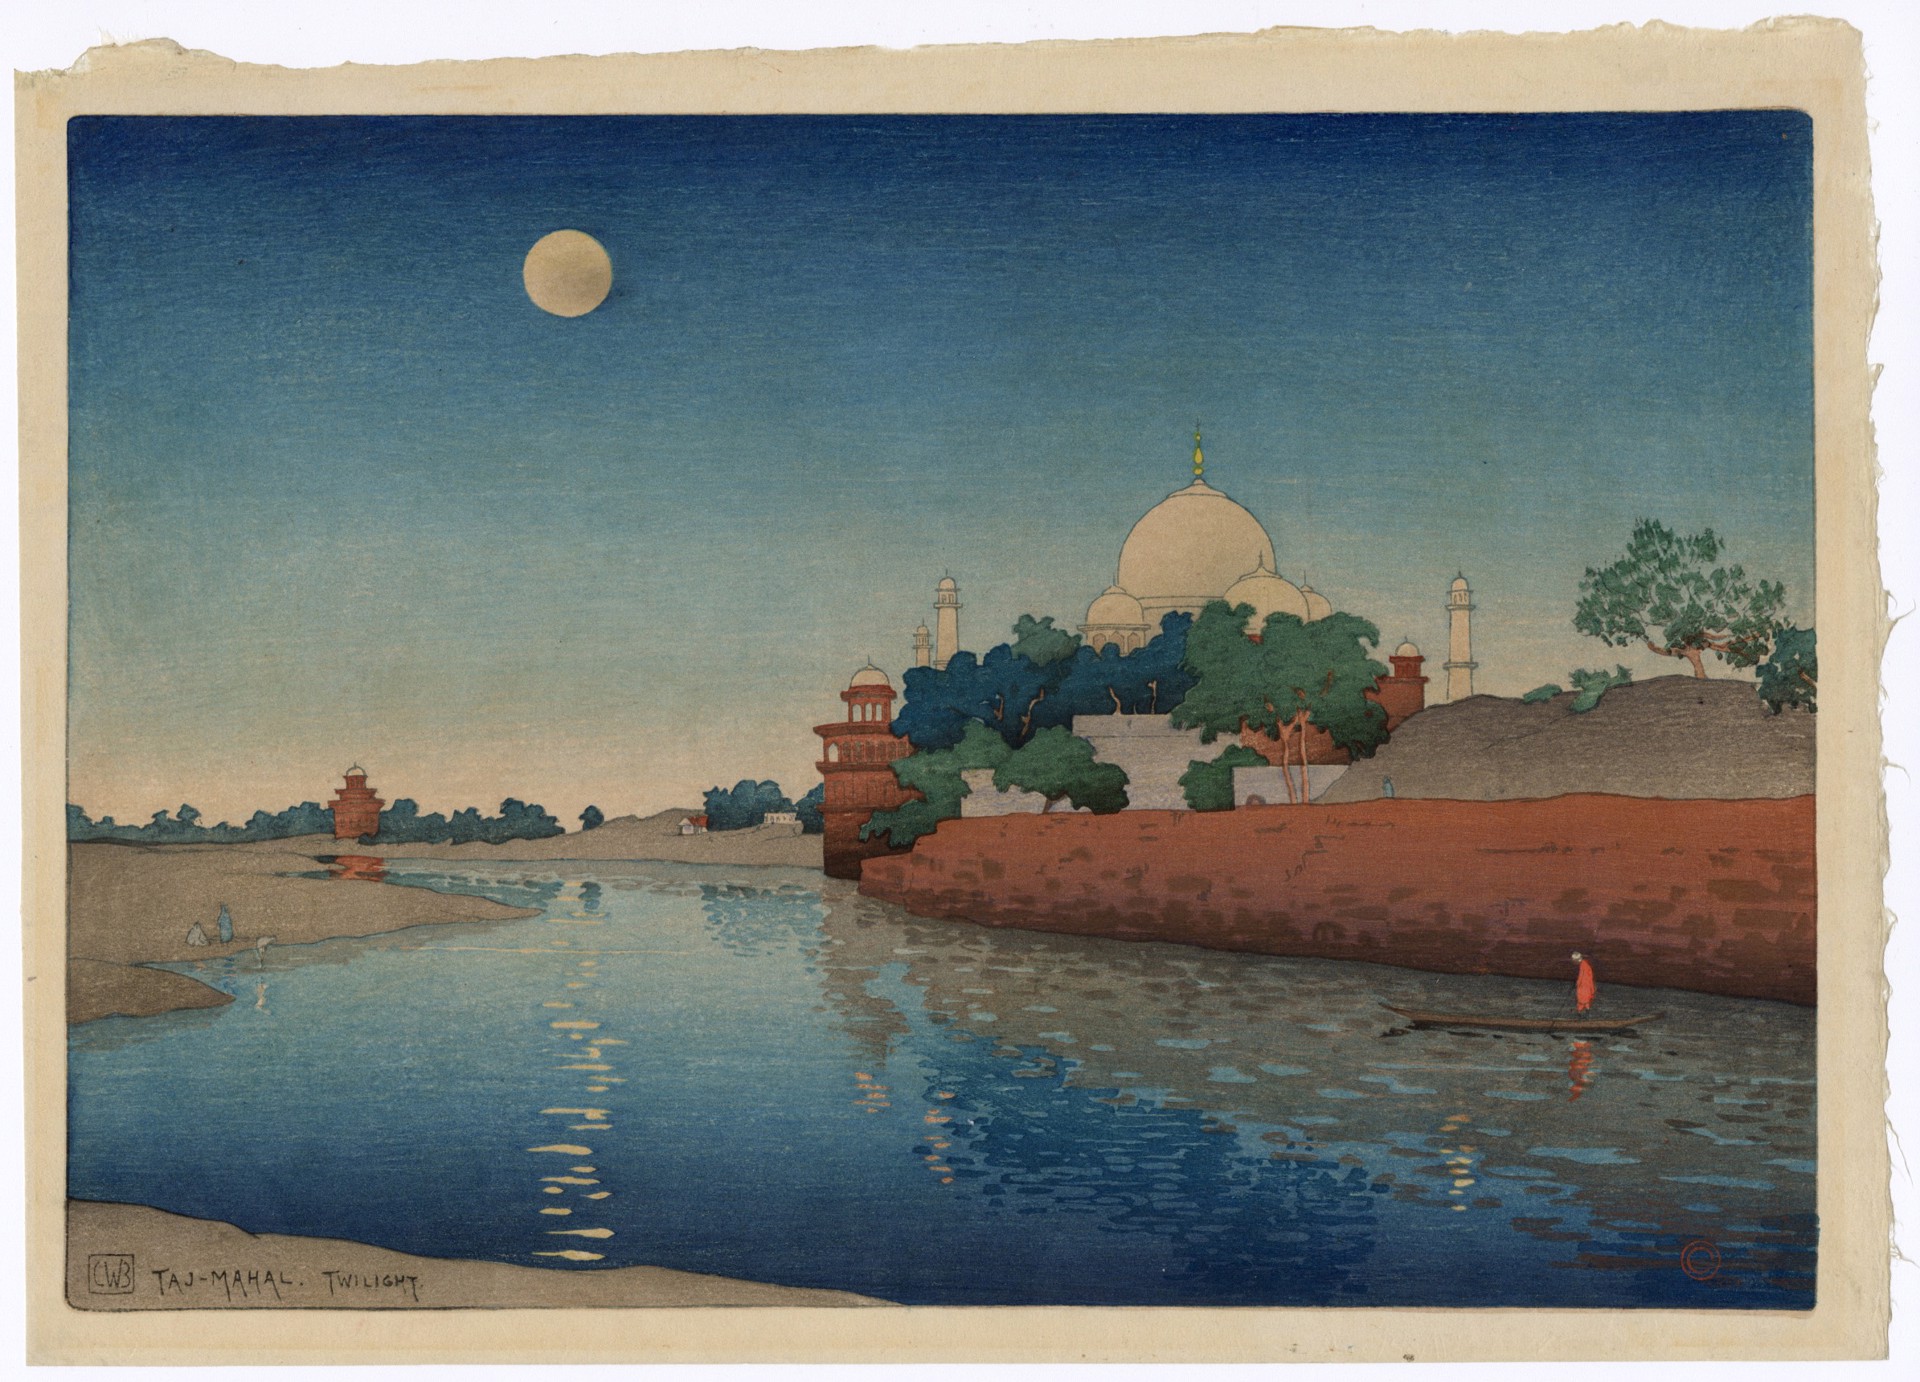 Taj Mahal - Twilight by Charles Bartlett